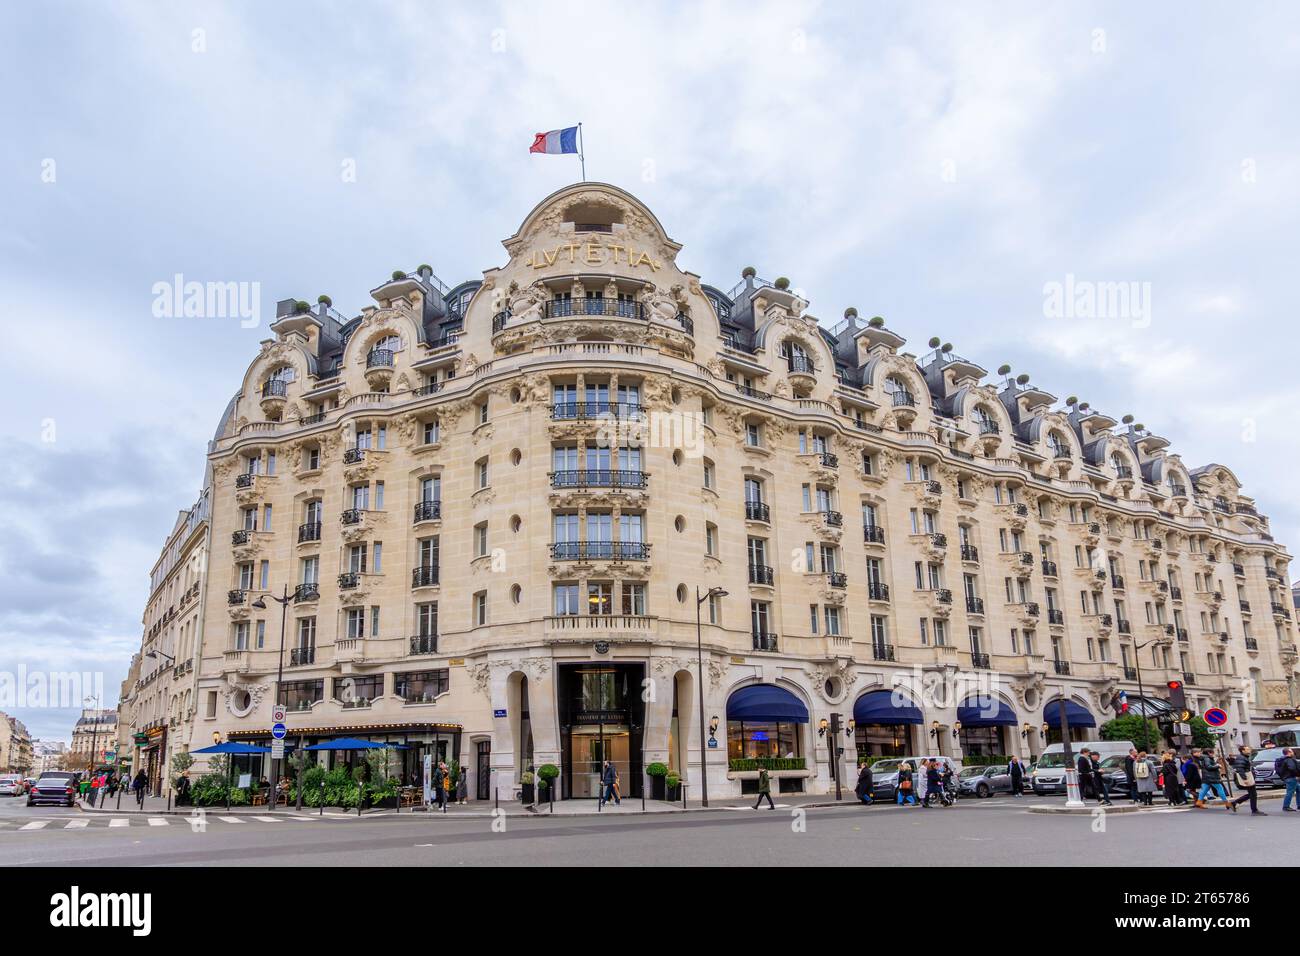 Vista esterna dell'hotel Lutetia. Il Lutetia è un lussuoso hotel in stile art nouveau situato su Boulevard Raspail nel 6° arrondissement di Parigi Foto Stock